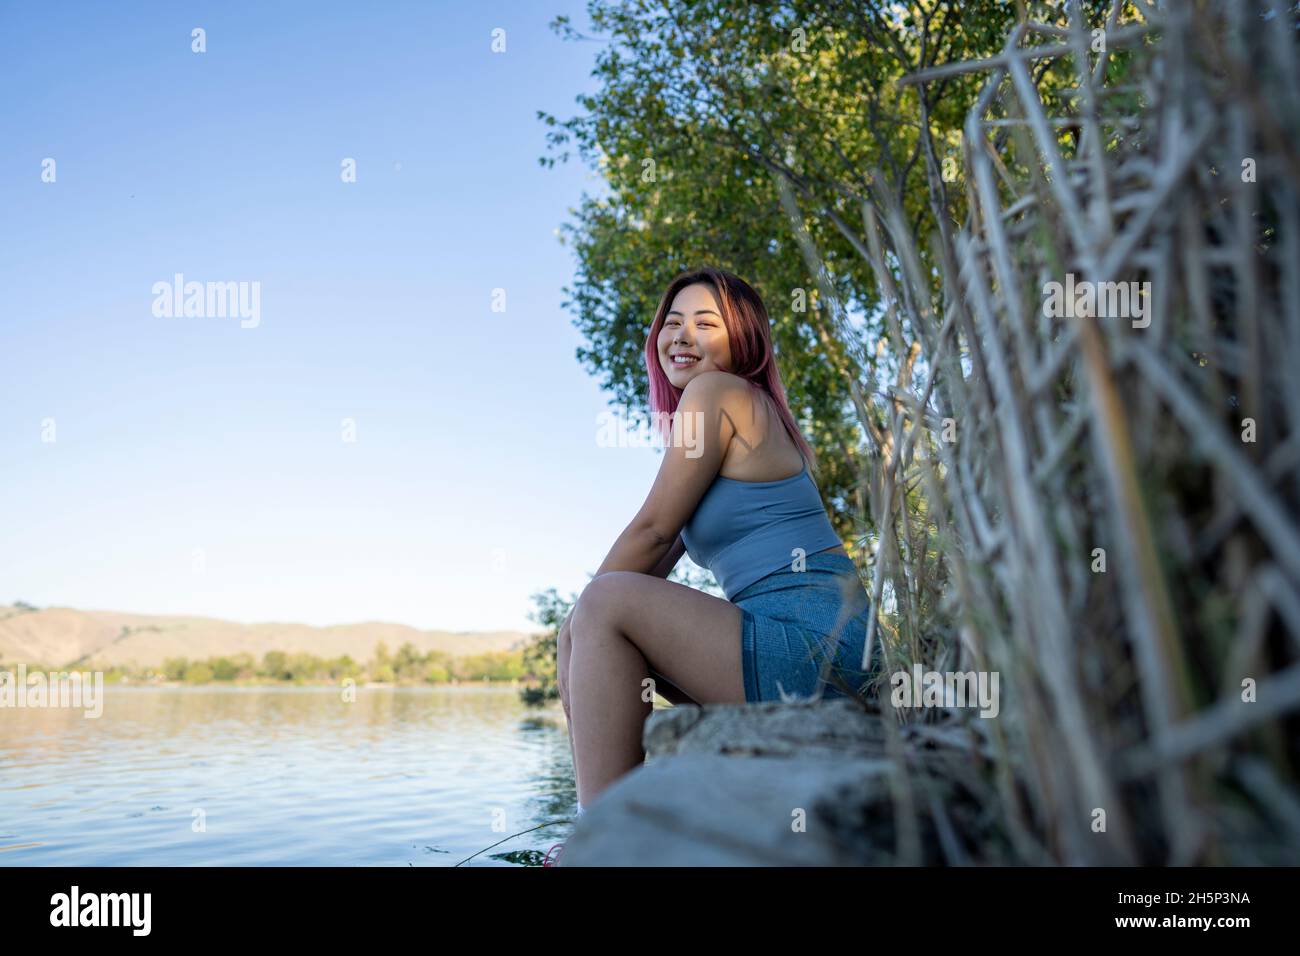 Jeune femme asiatique à Dappled lumière du soleil assis sur la rive d'un lac idyllique Banque D'Images